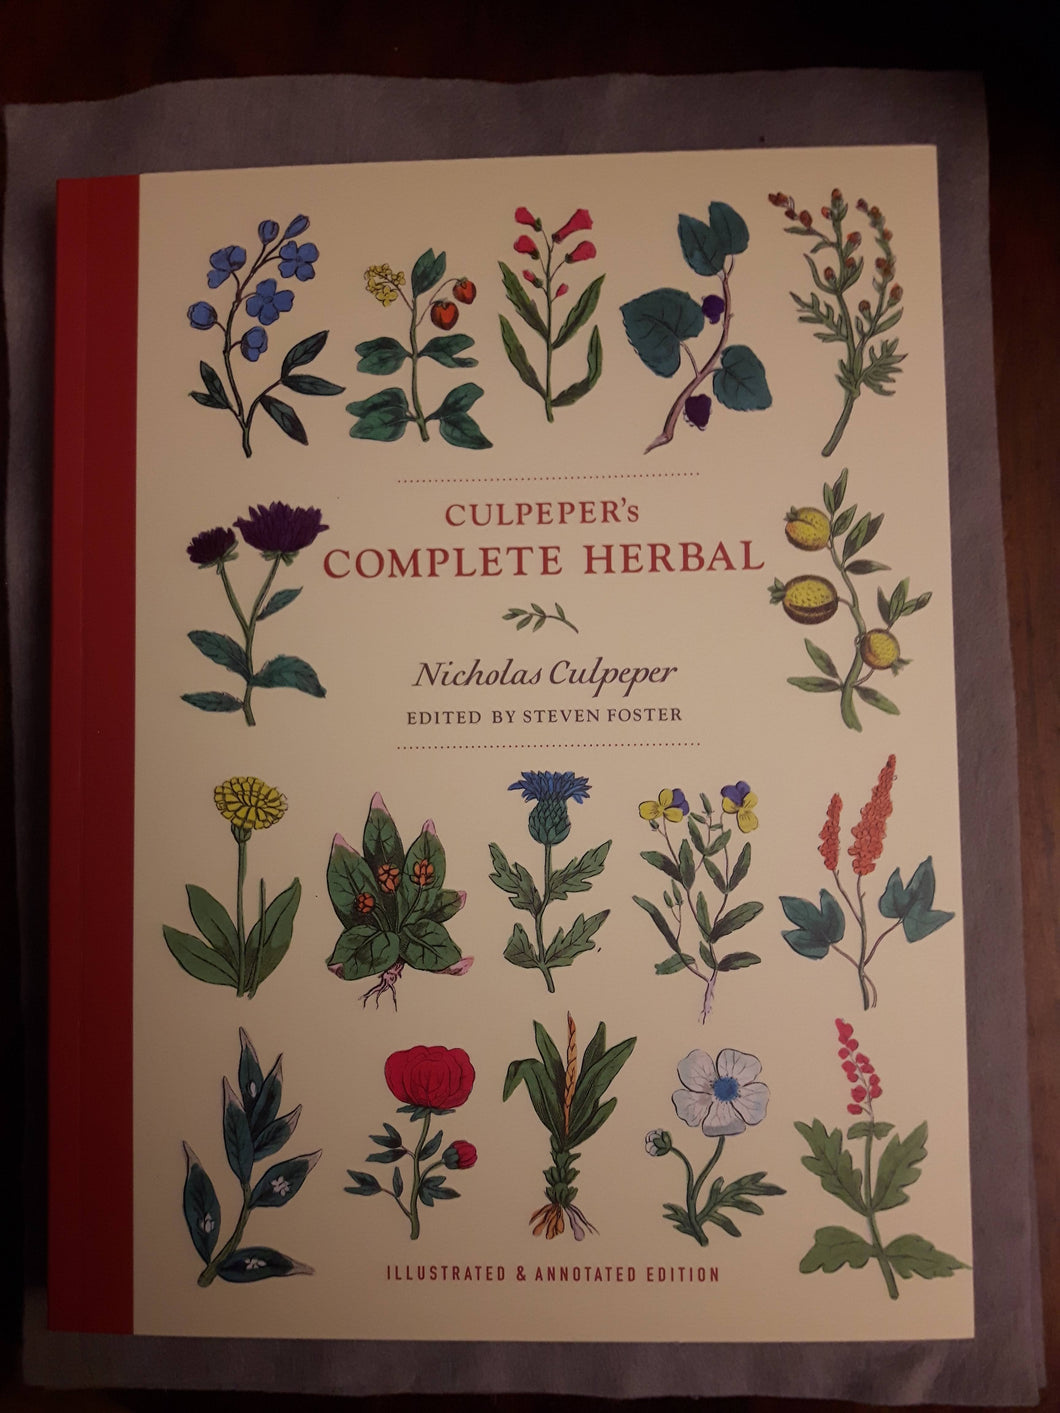 Culpepper's Complete Herbal